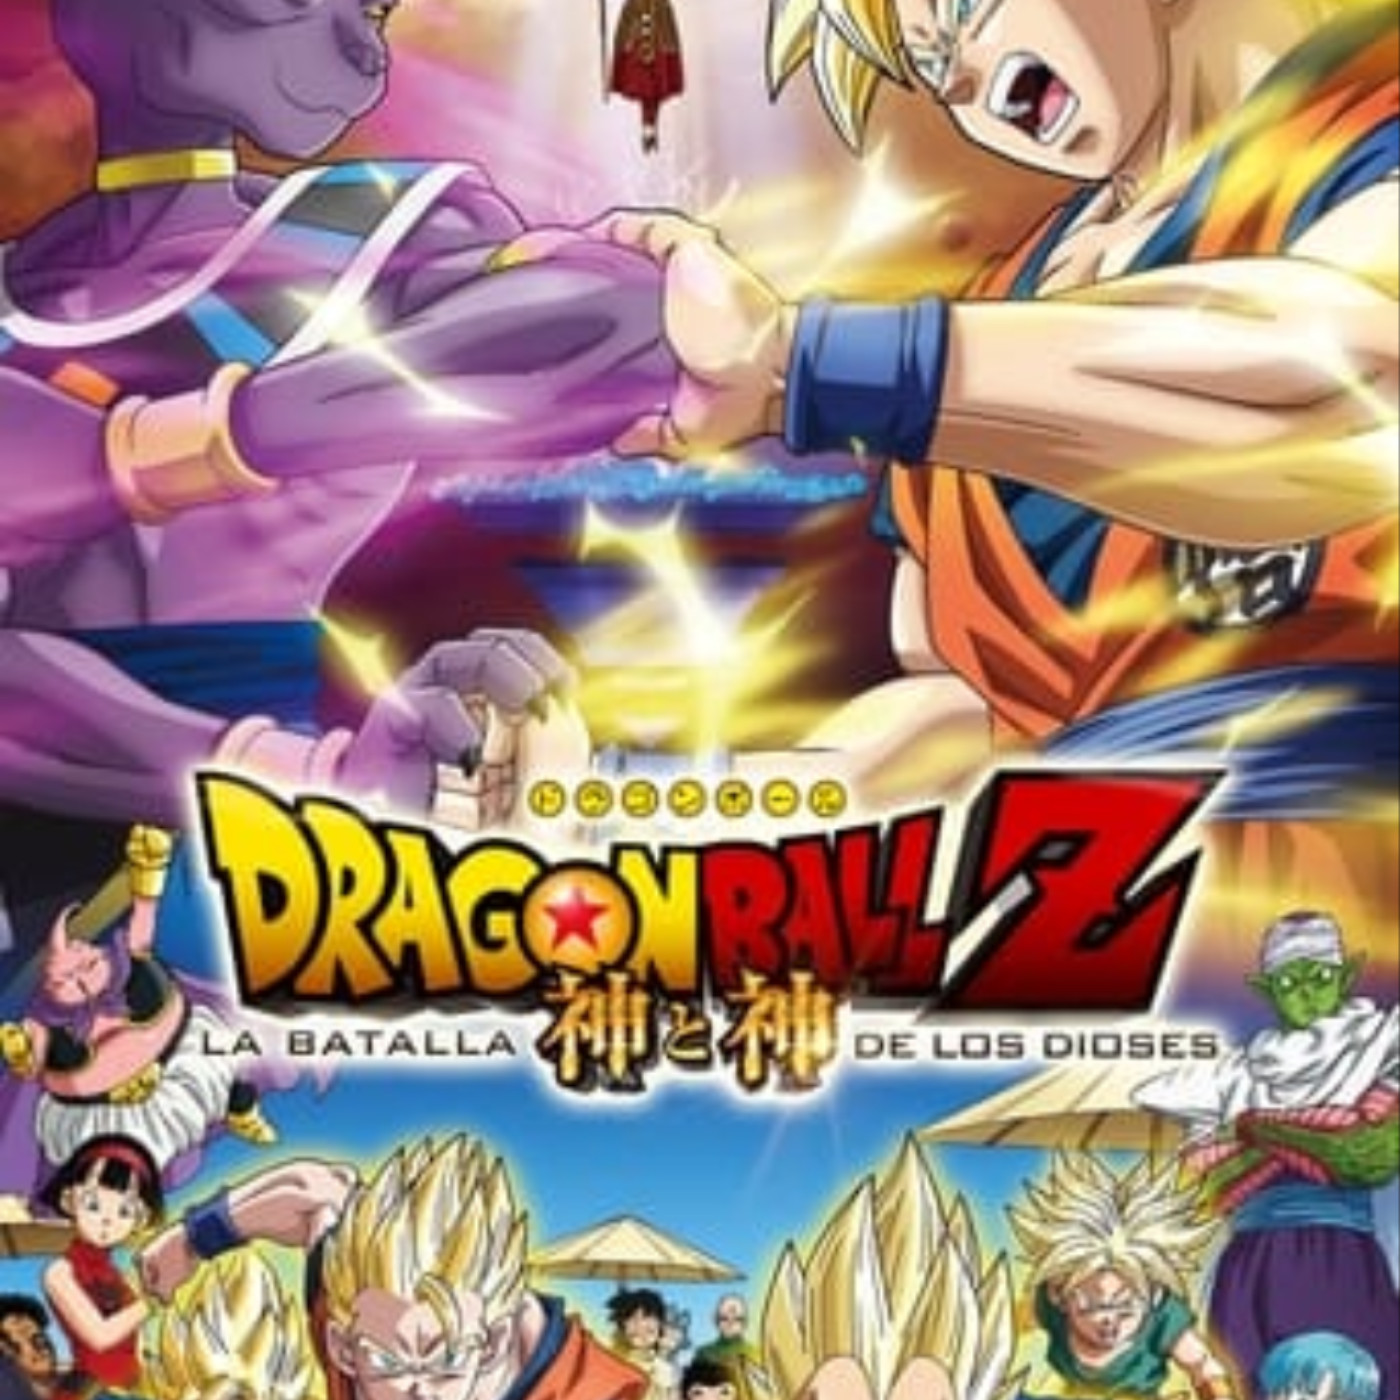 Ver Dragon Ball Z: La Batalla de los Dioses 2013 online gratis en español y  latino | Podcast on SoundOn